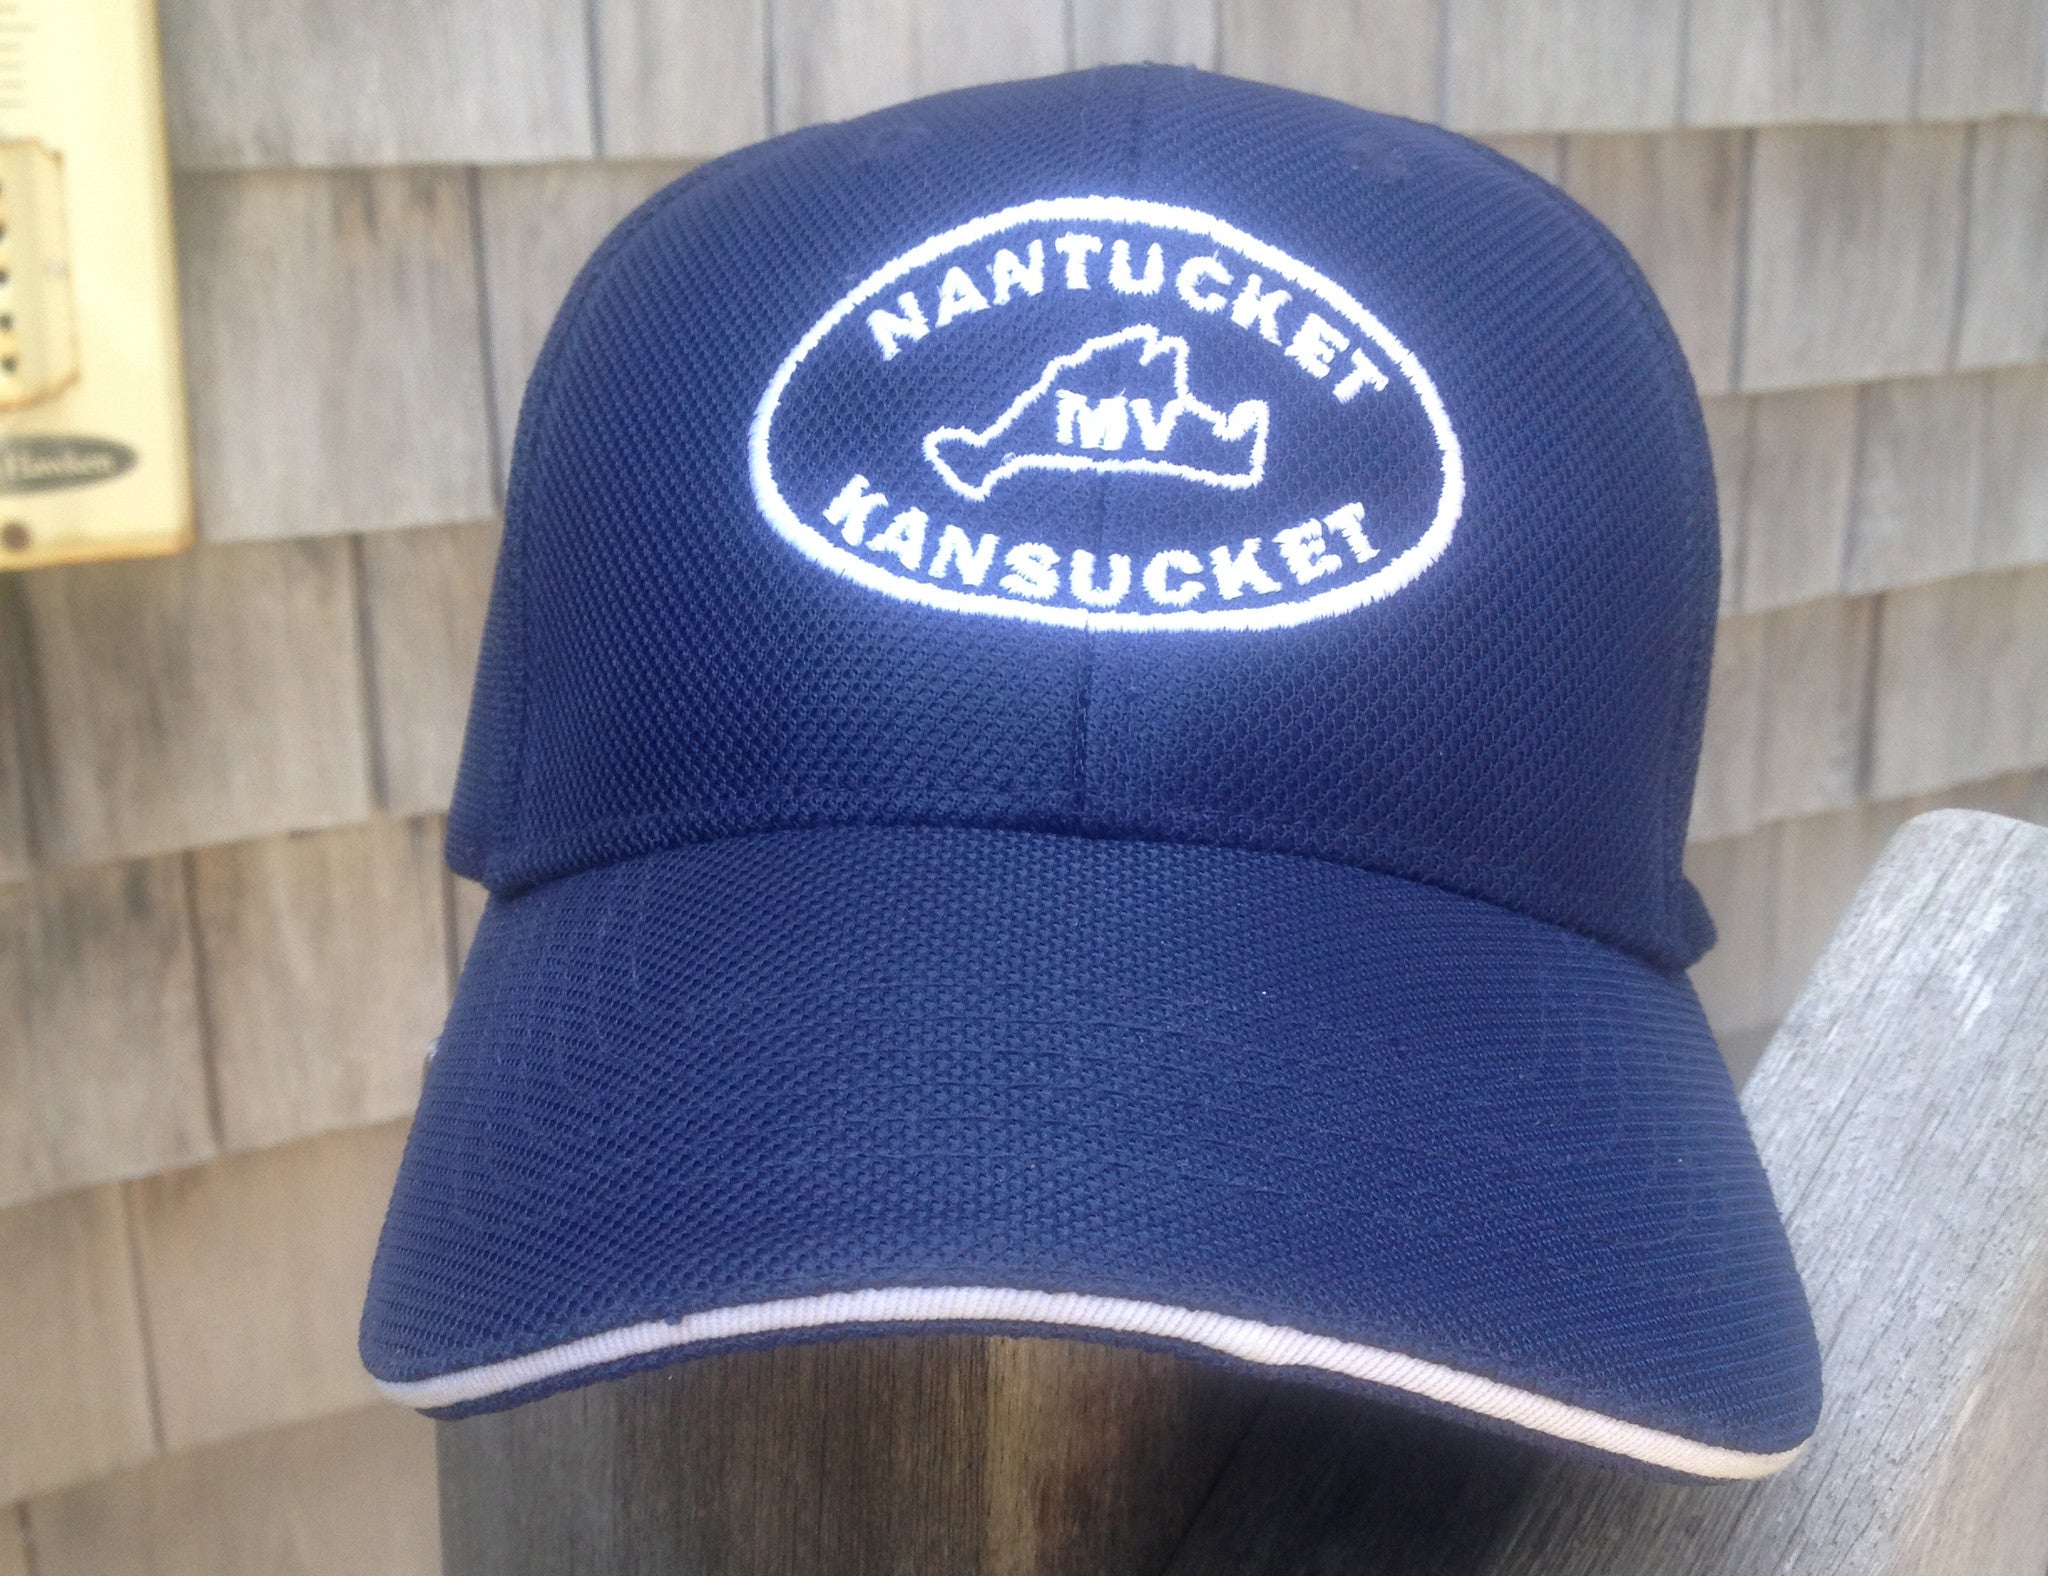 Nantucket Kansucket Baseball Hat